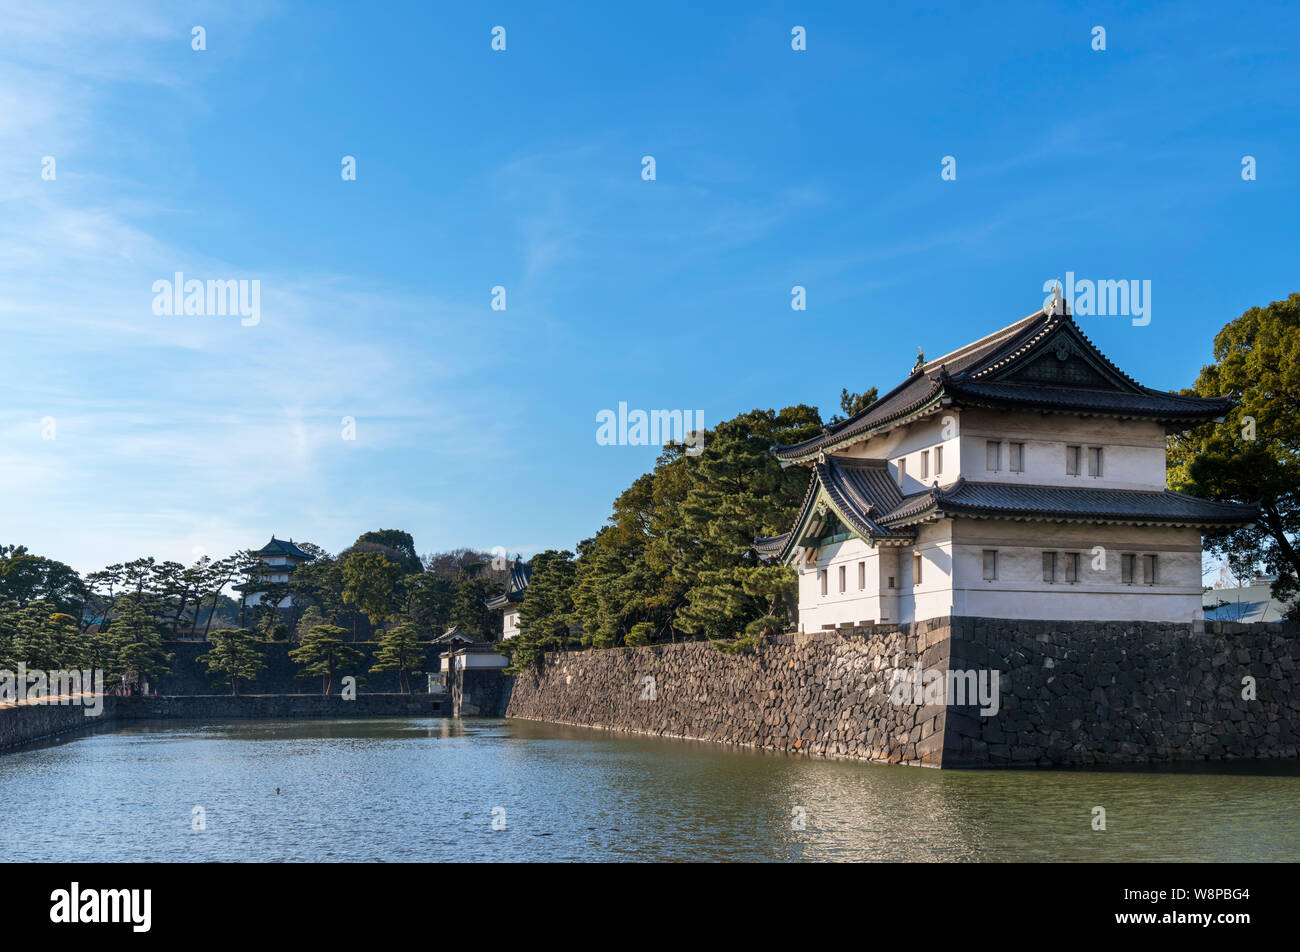 El foso y Sakurada mirando hacia Kikyō - puerta de mon, el Palacio Imperial, Tokio, Japón Foto de stock